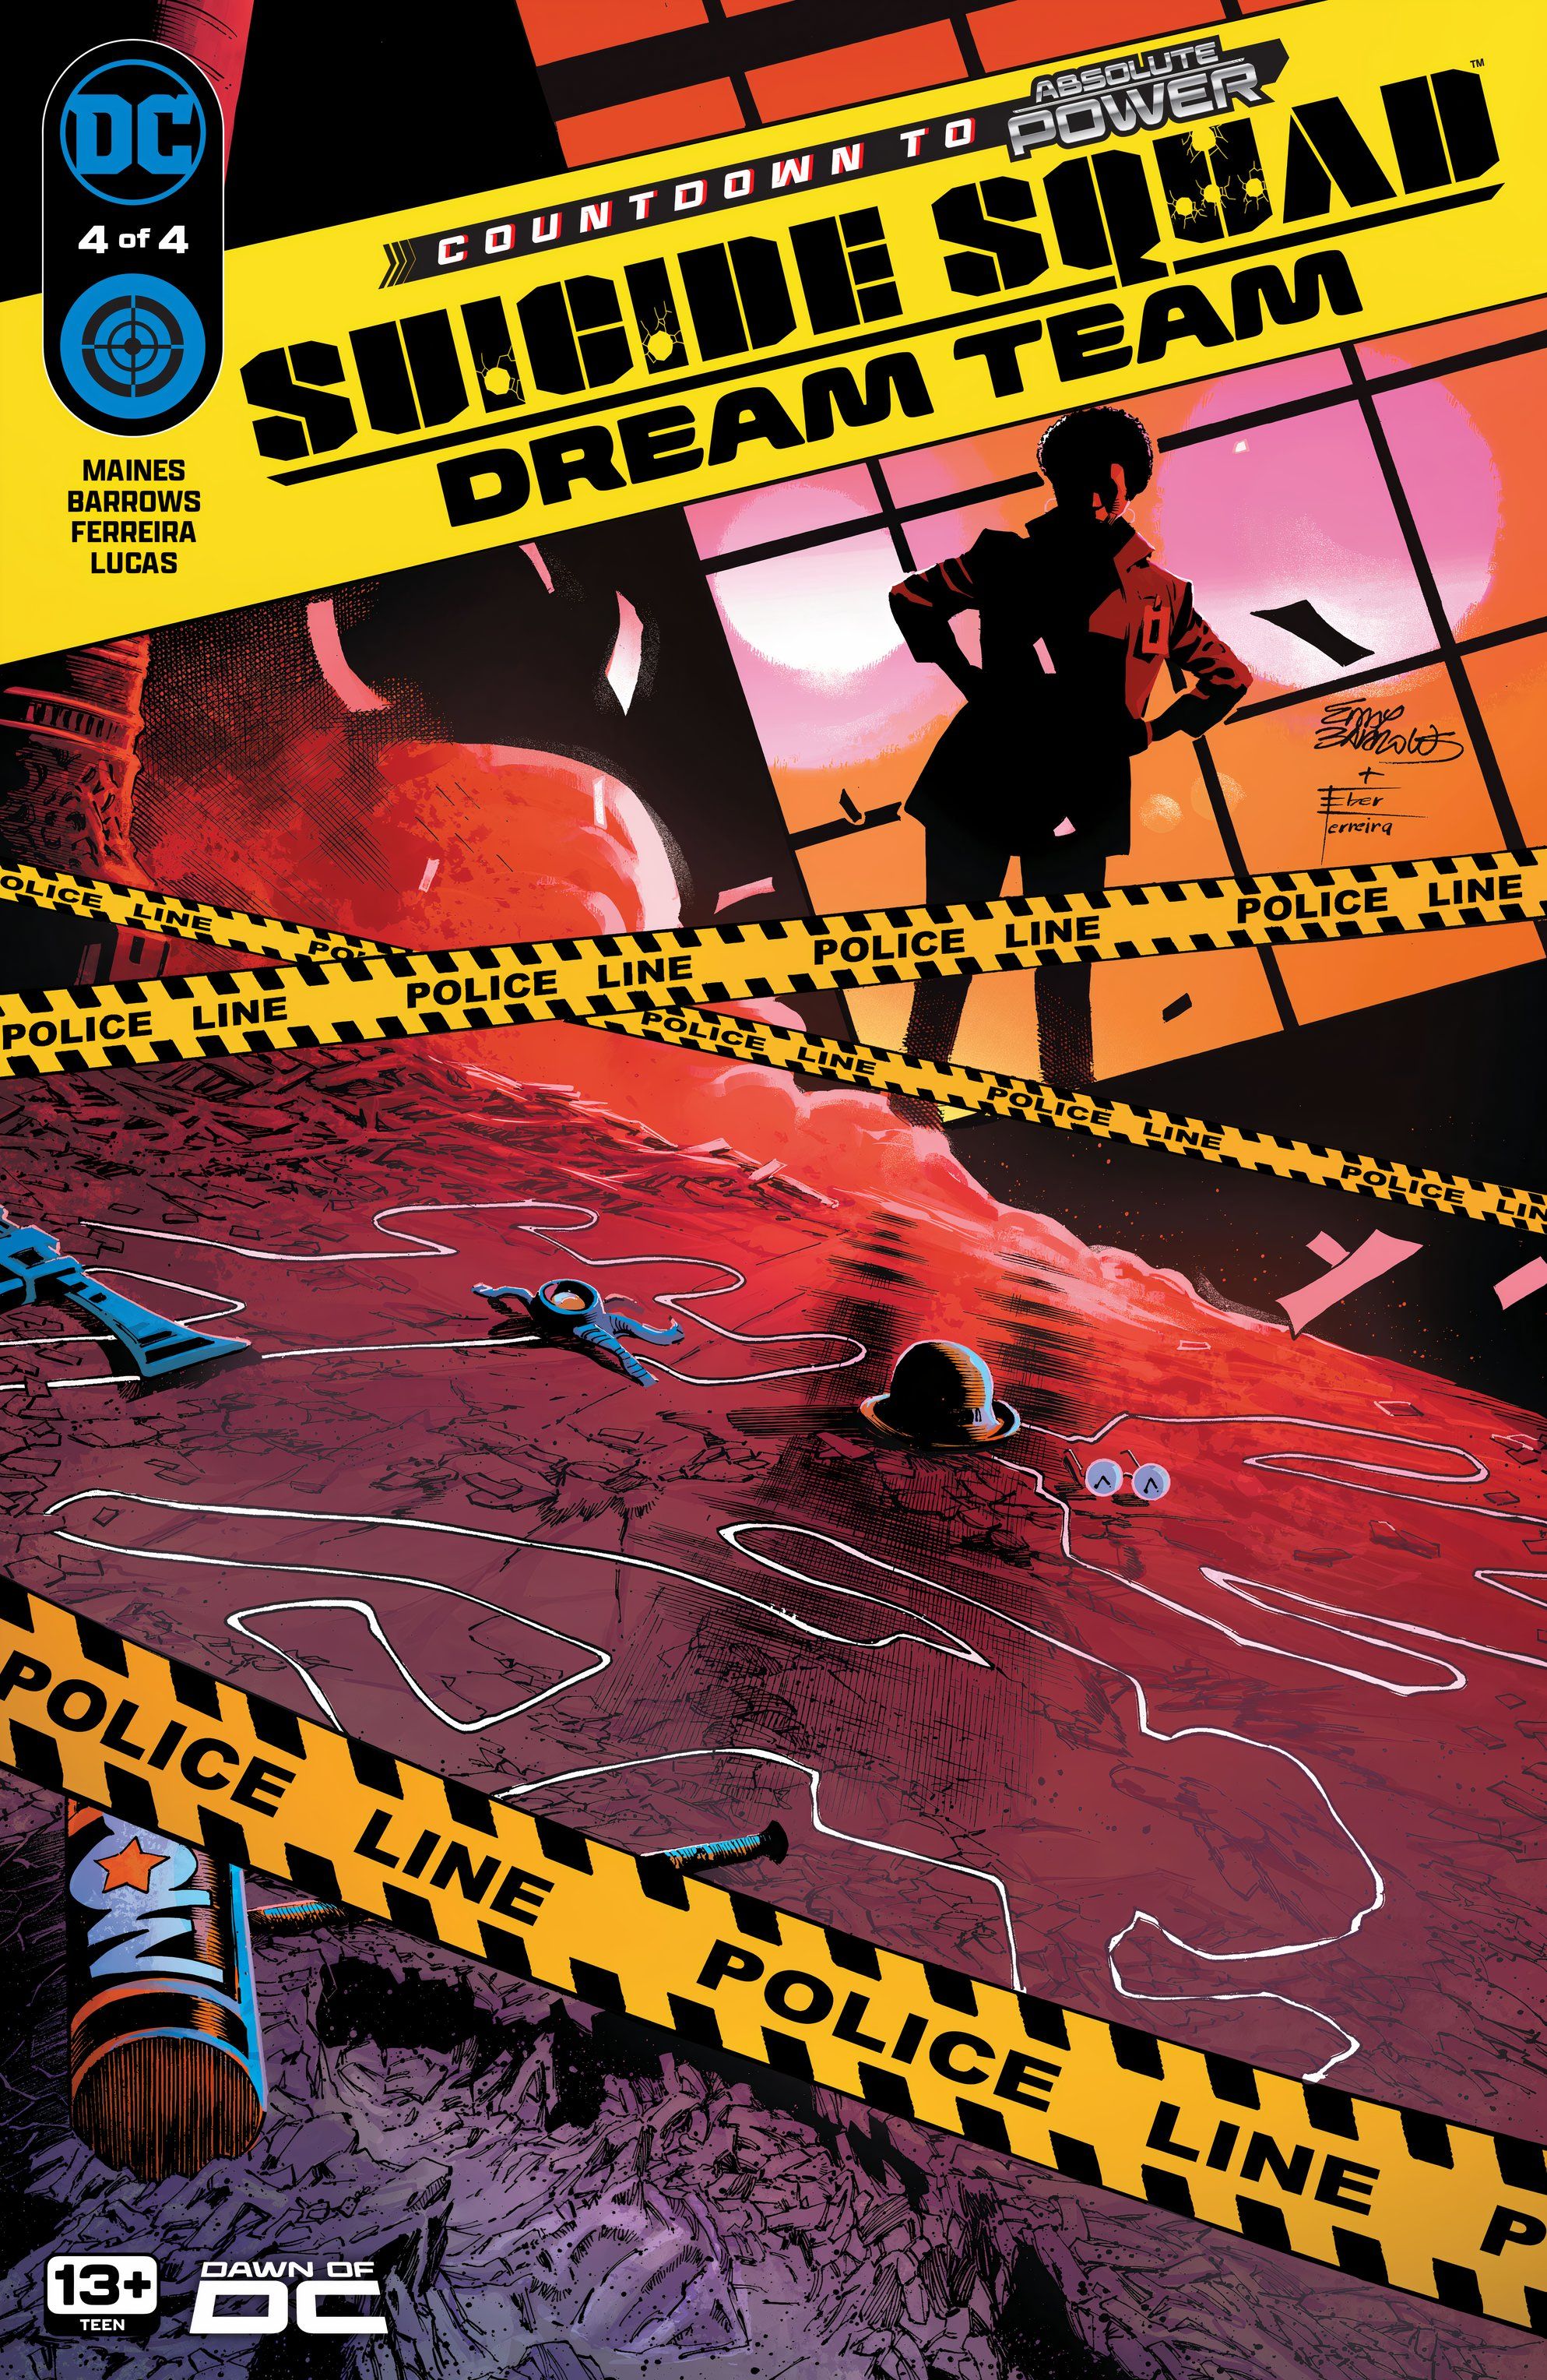 Capa principal do Esquadrão Suicida Dream Team 4: Amanda Waller analisa evidências em uma cena de crime com fita policial.